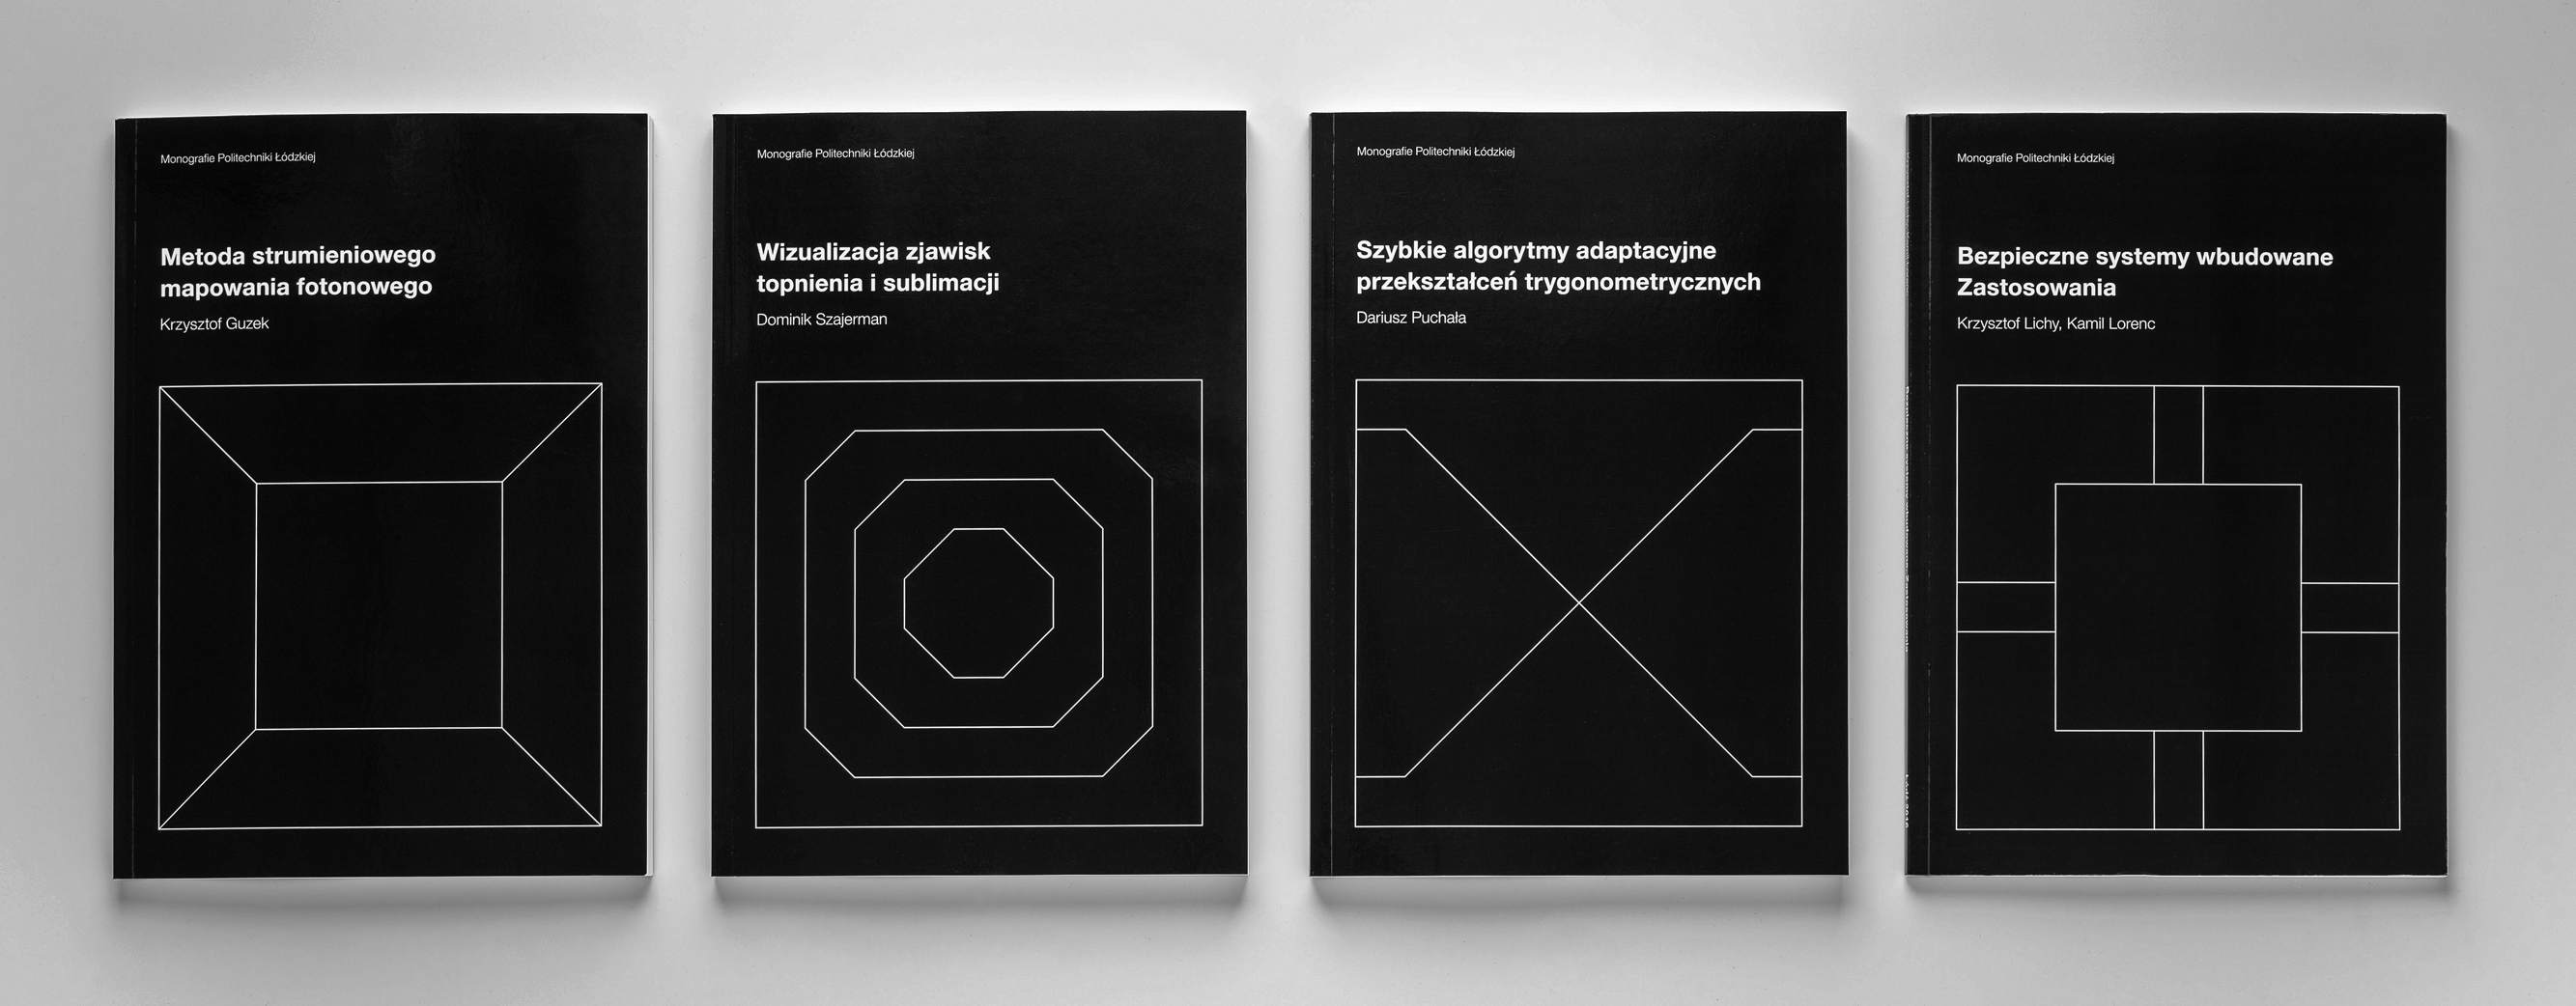 Krzysztof Guzek - Book cover series Monografie Politechniki Łódzkiej